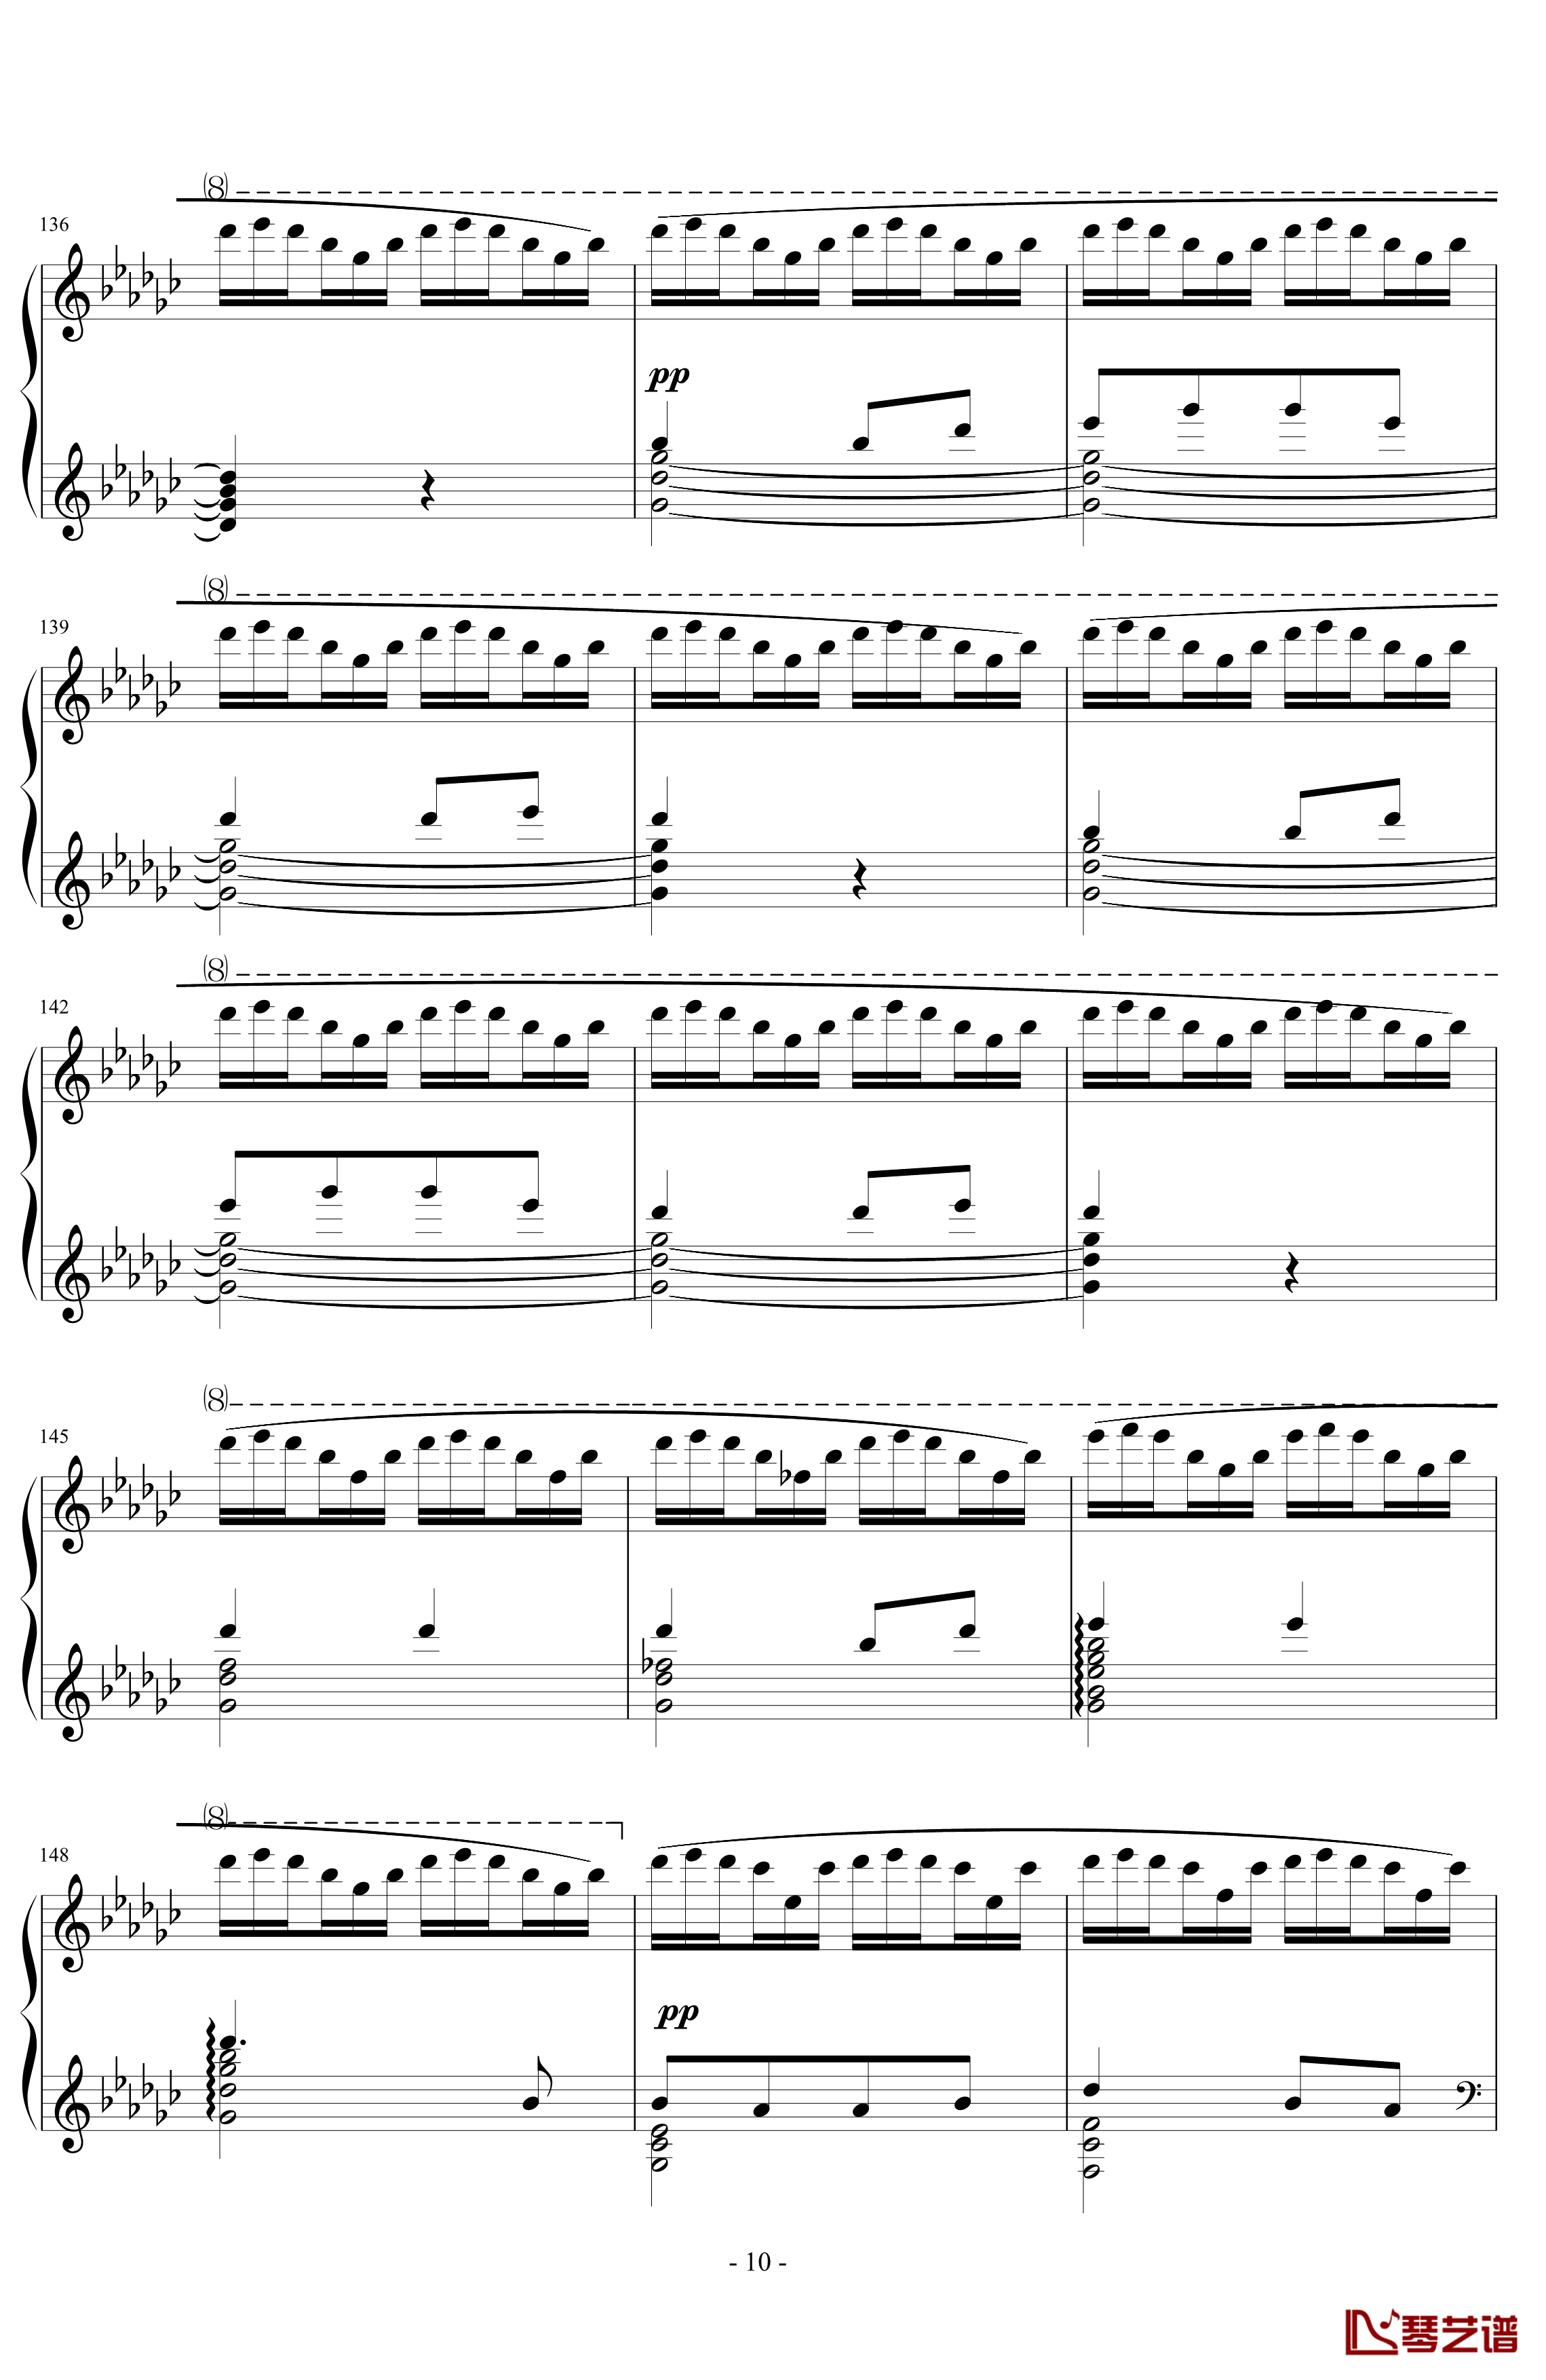 《练习曲Op.25 No.3》钢琴谱-阿连斯基-希望能为大家带来惊喜10